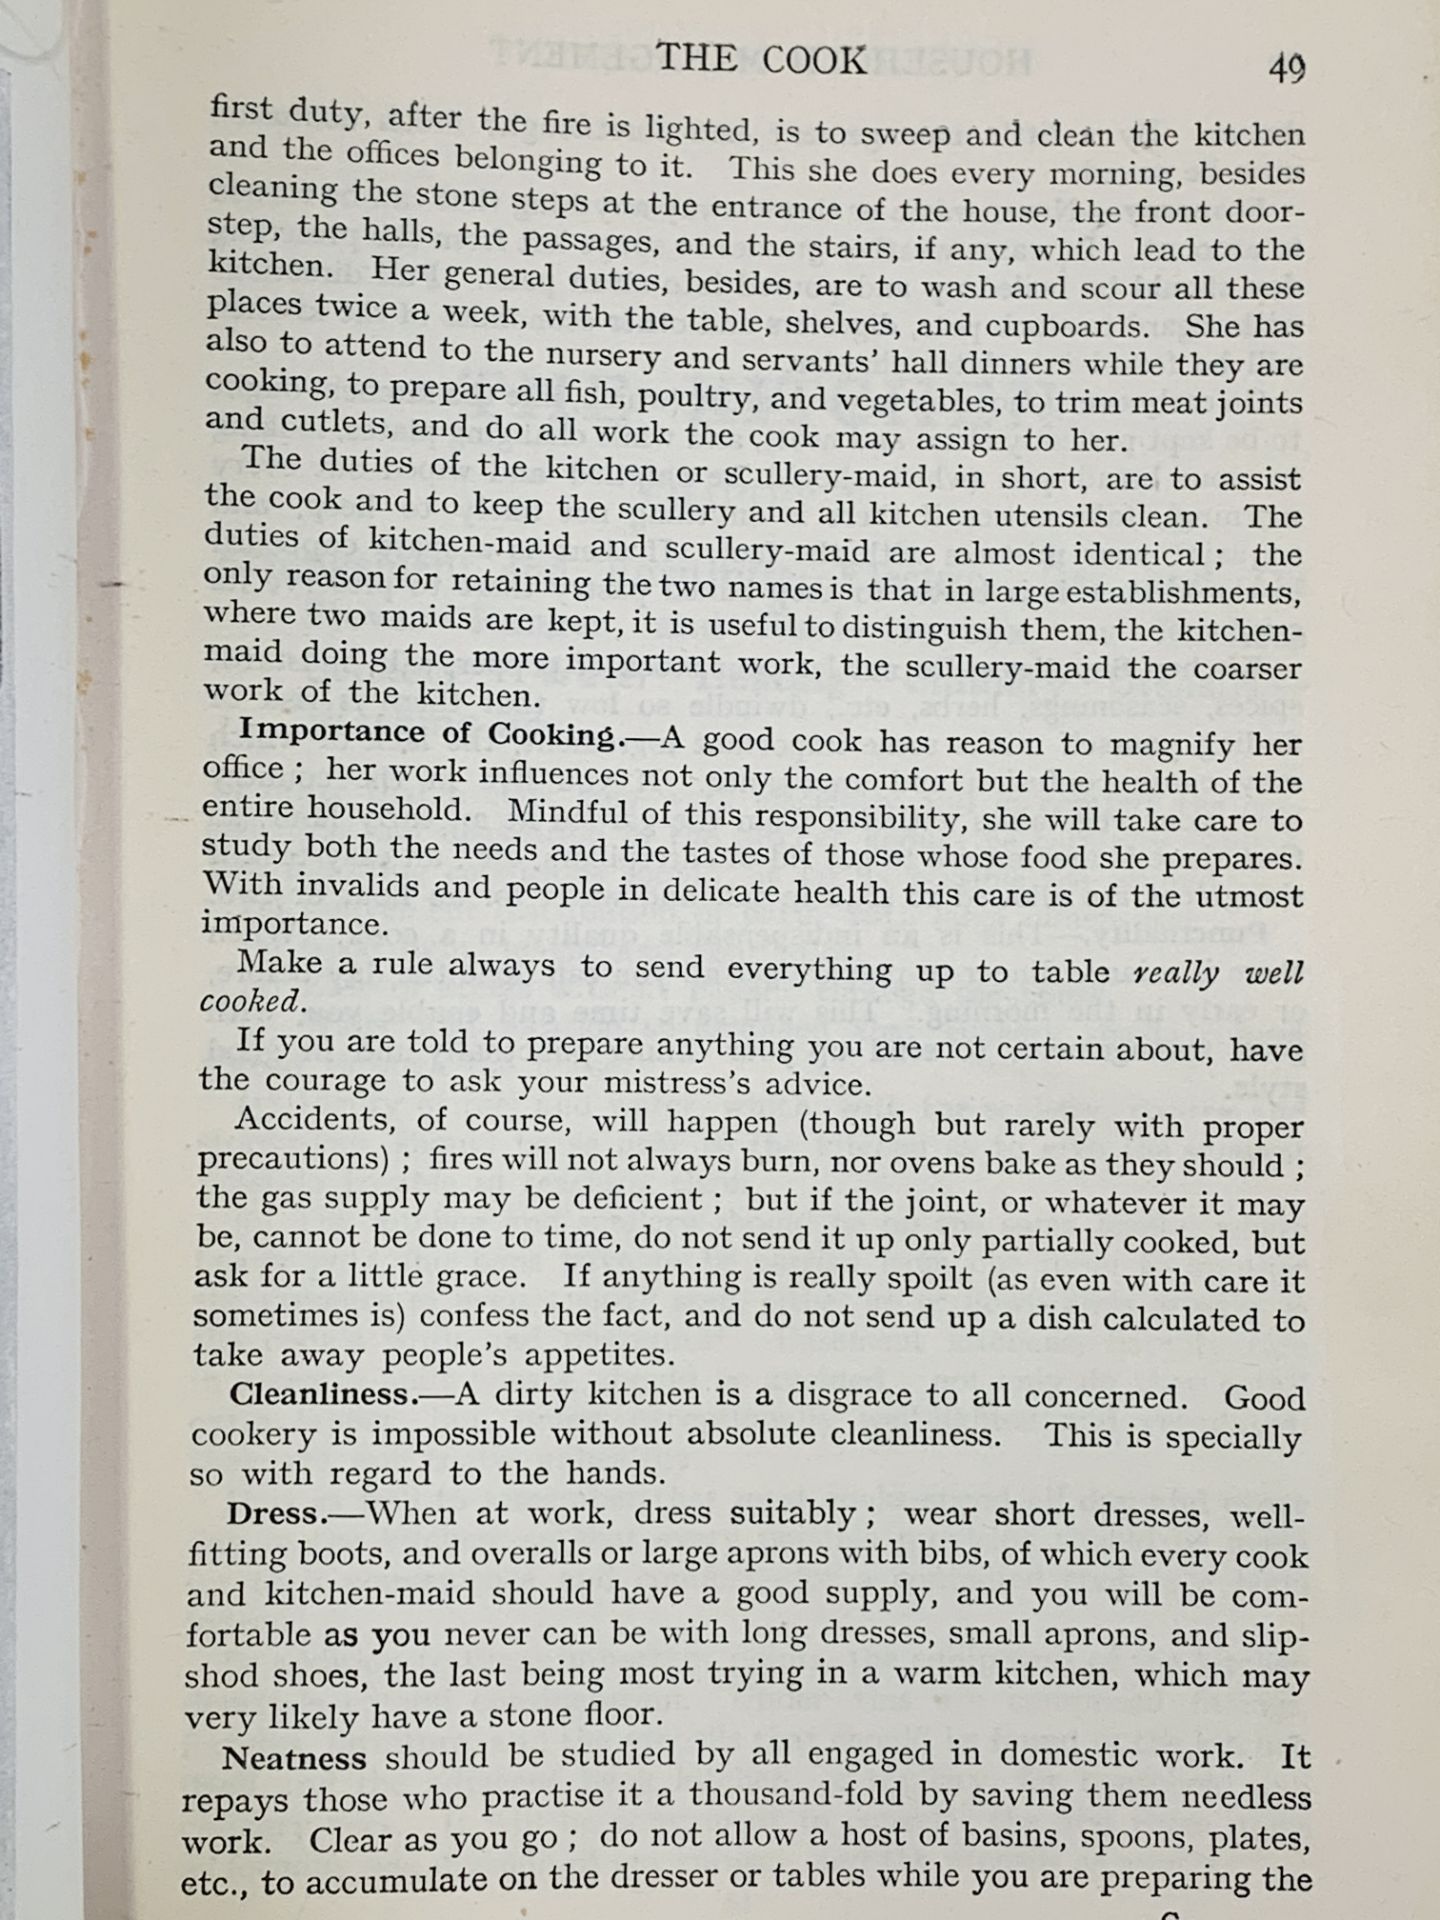 Mrs Beeton's Household Management, published 1923 - Image 3 of 4